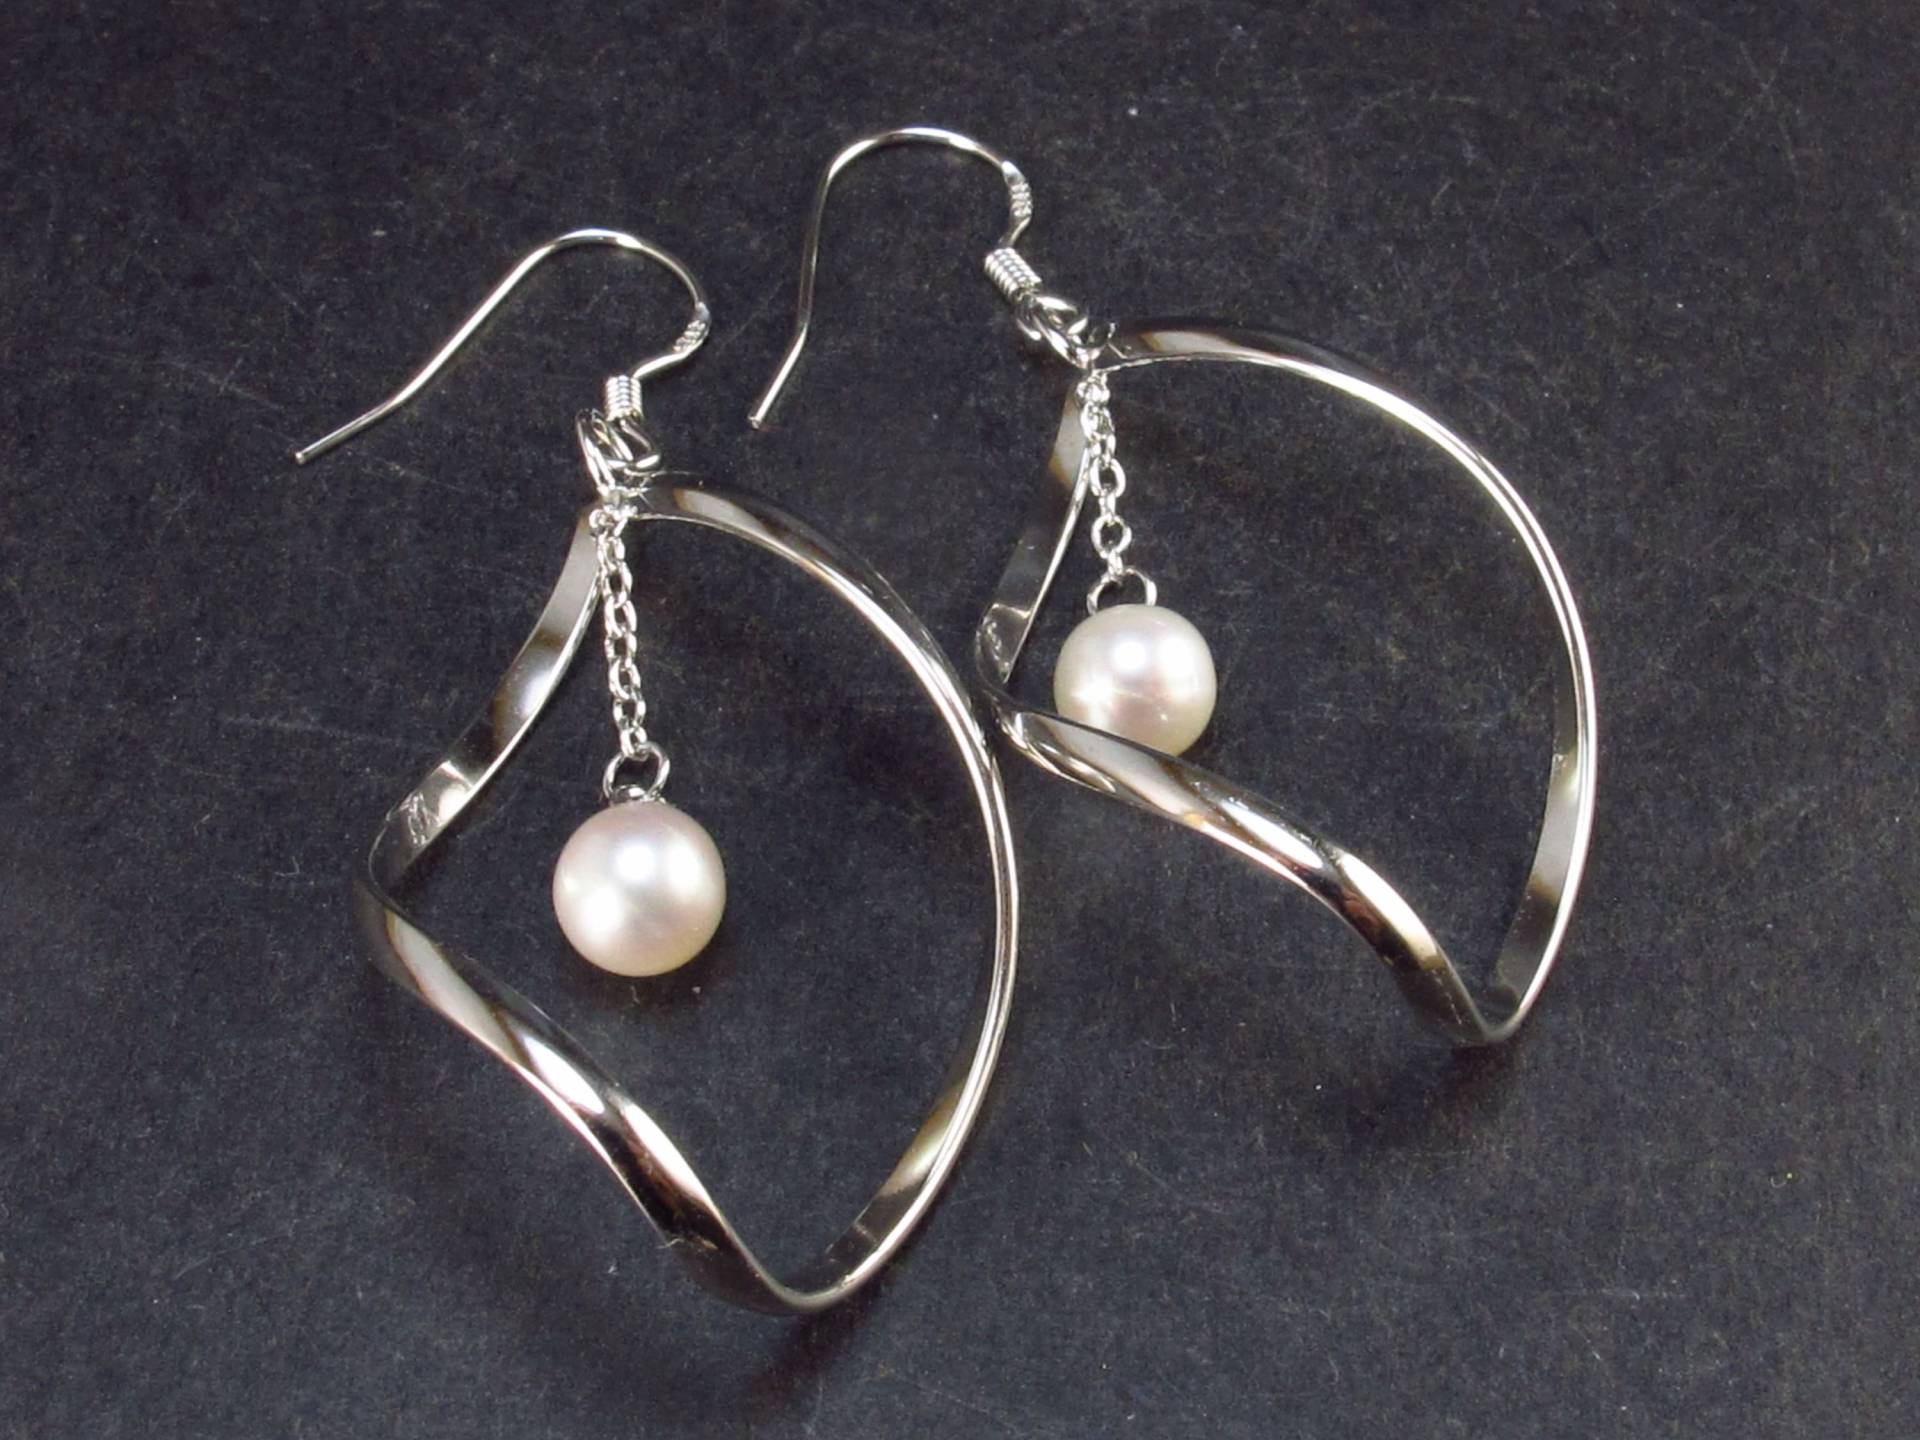 Süsswasser Weiße Perlen Baumeln Kette 925 Silber Ohrringe - 1, 9" von TheGlobalStone